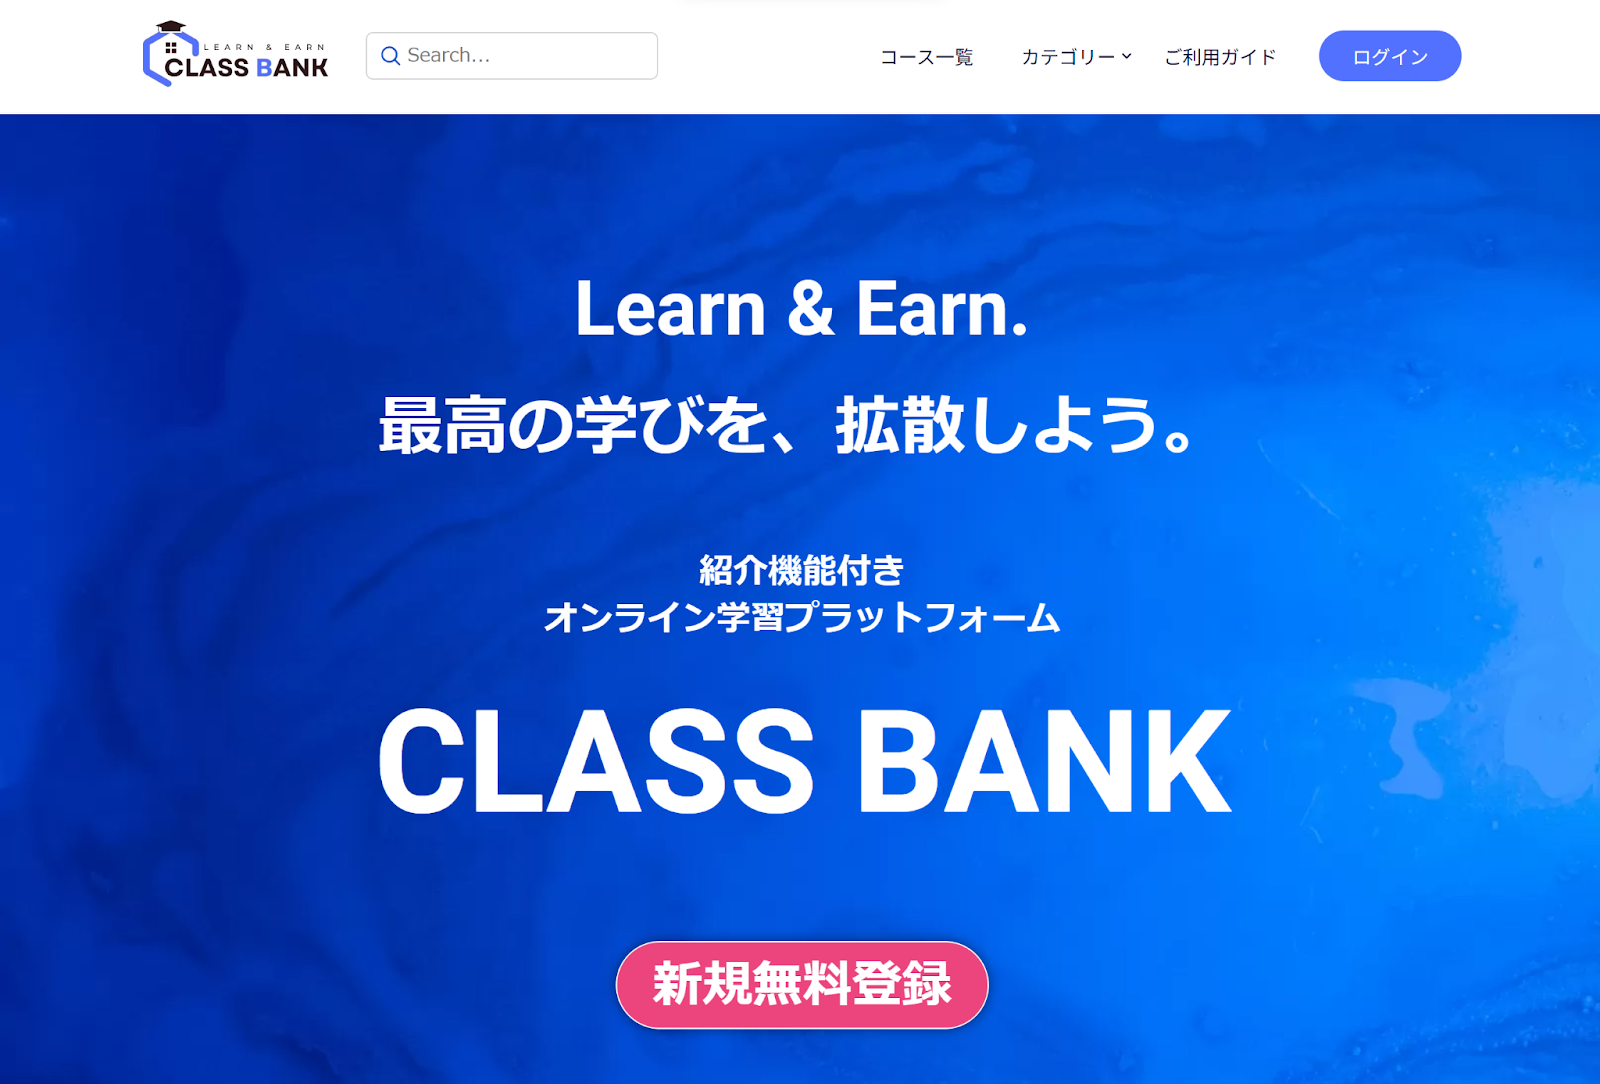 CLASS BANK